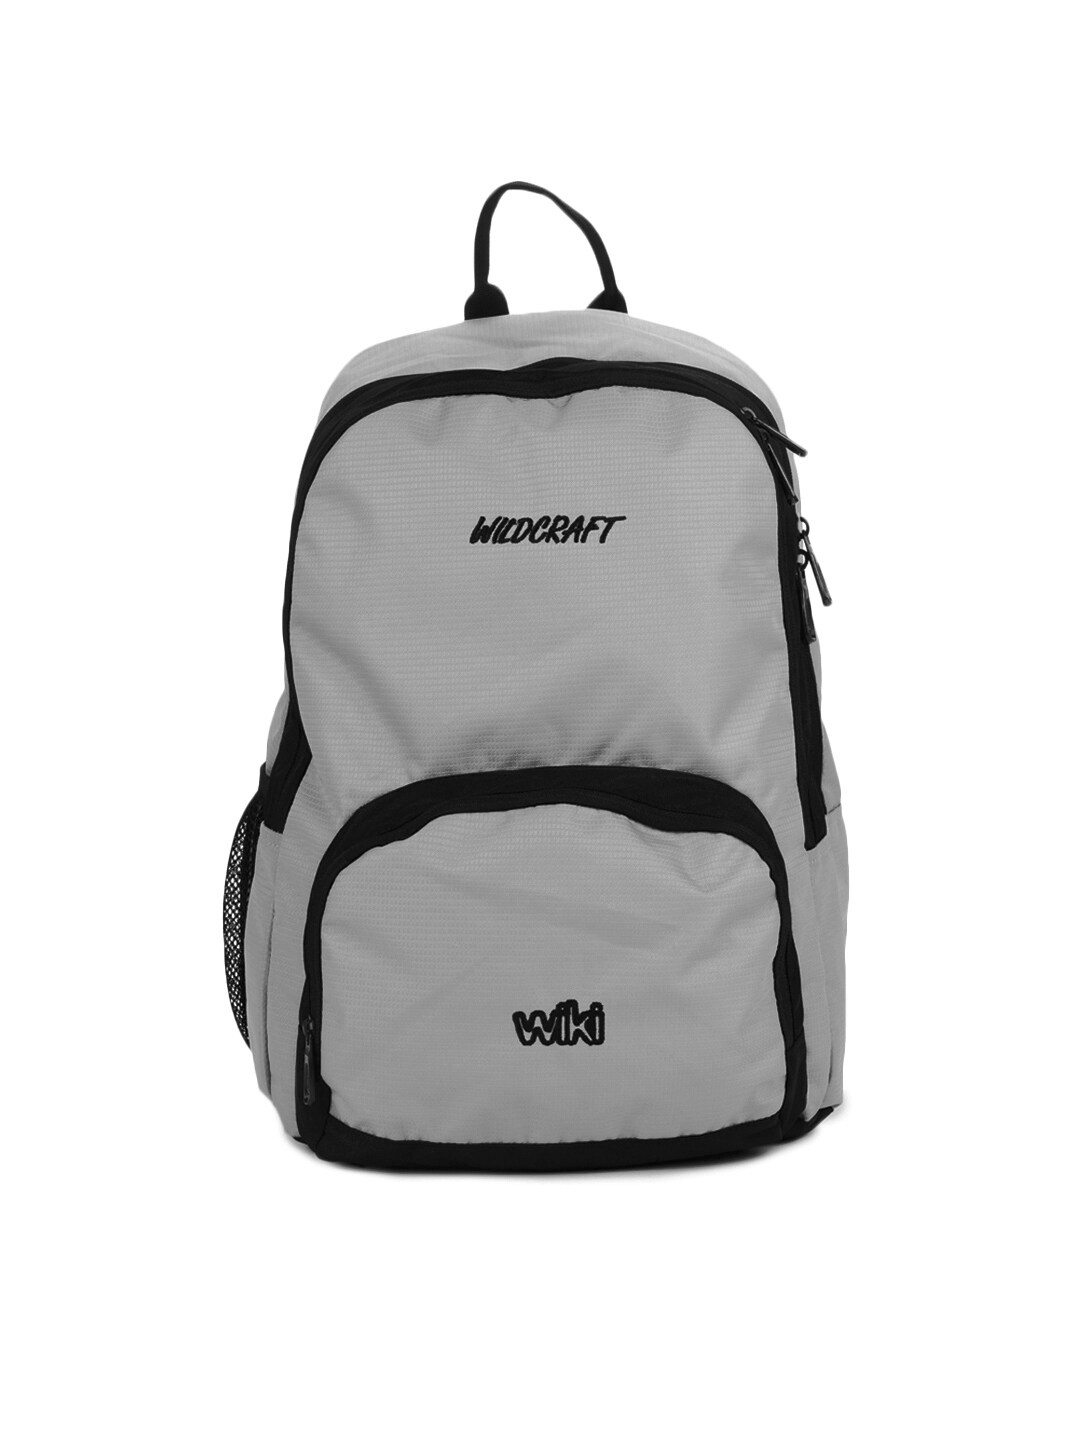 Wildcraft Unisex Grey Backpack